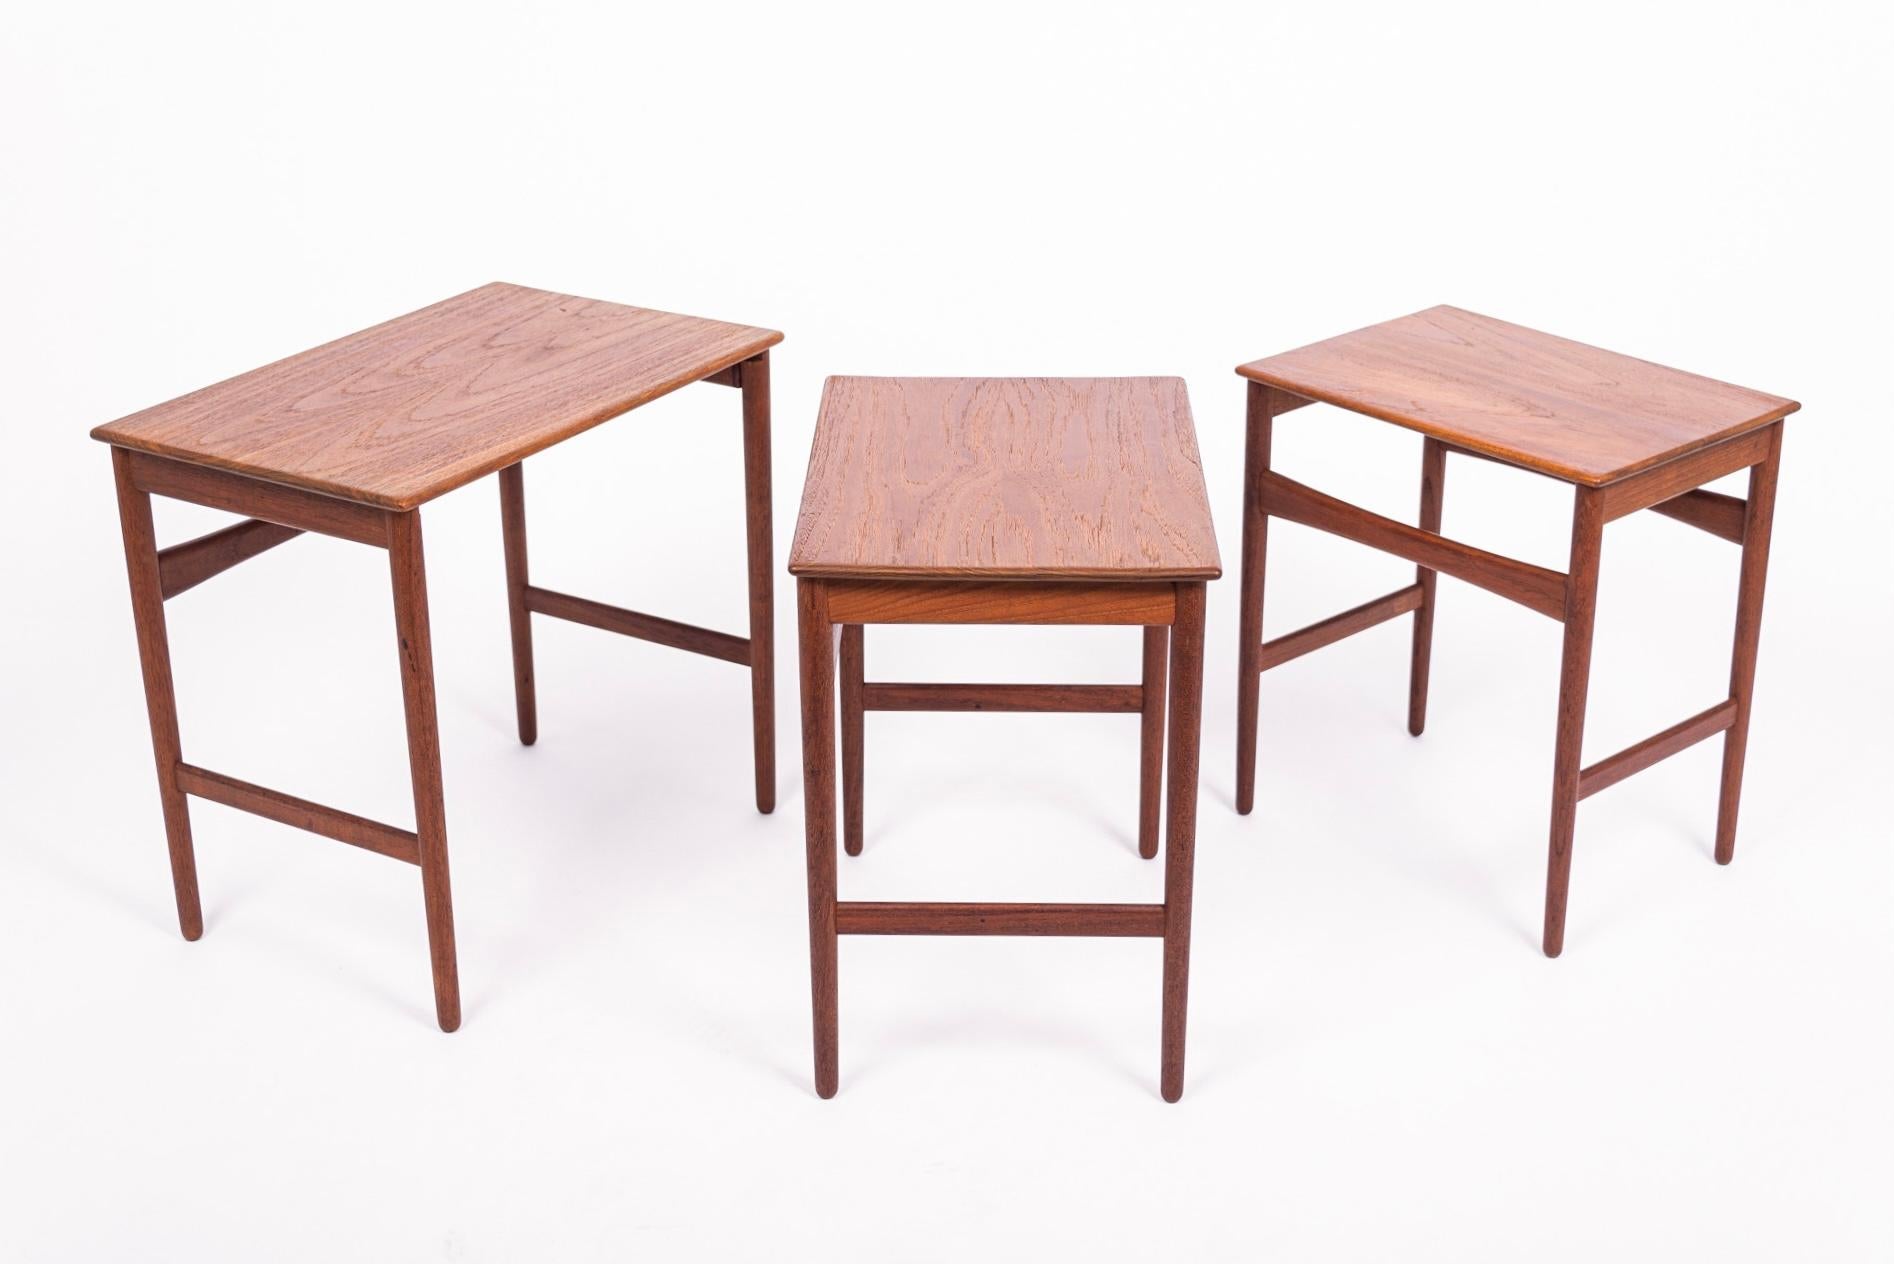 Danish Modern Teak Nesting Side Tables by Hans J. Wegner, 1960s For Sale 1